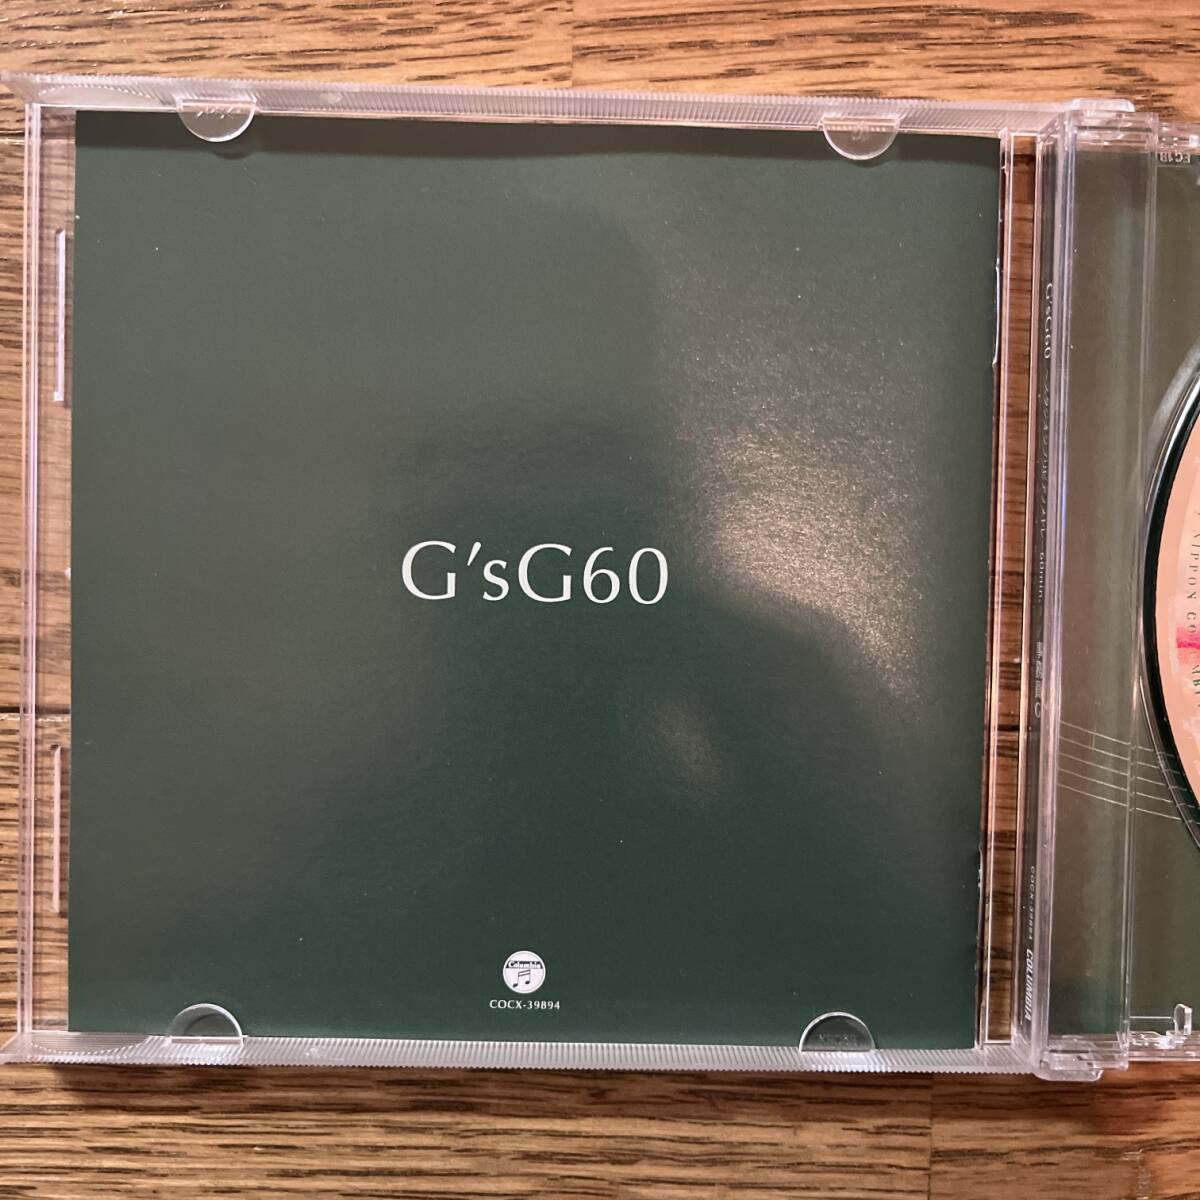  записано в Японии CD GsG60 Studio Ghibli фортепьяно medore-60min. CD офисная работа участник G COCX-39894 с поясом оби 